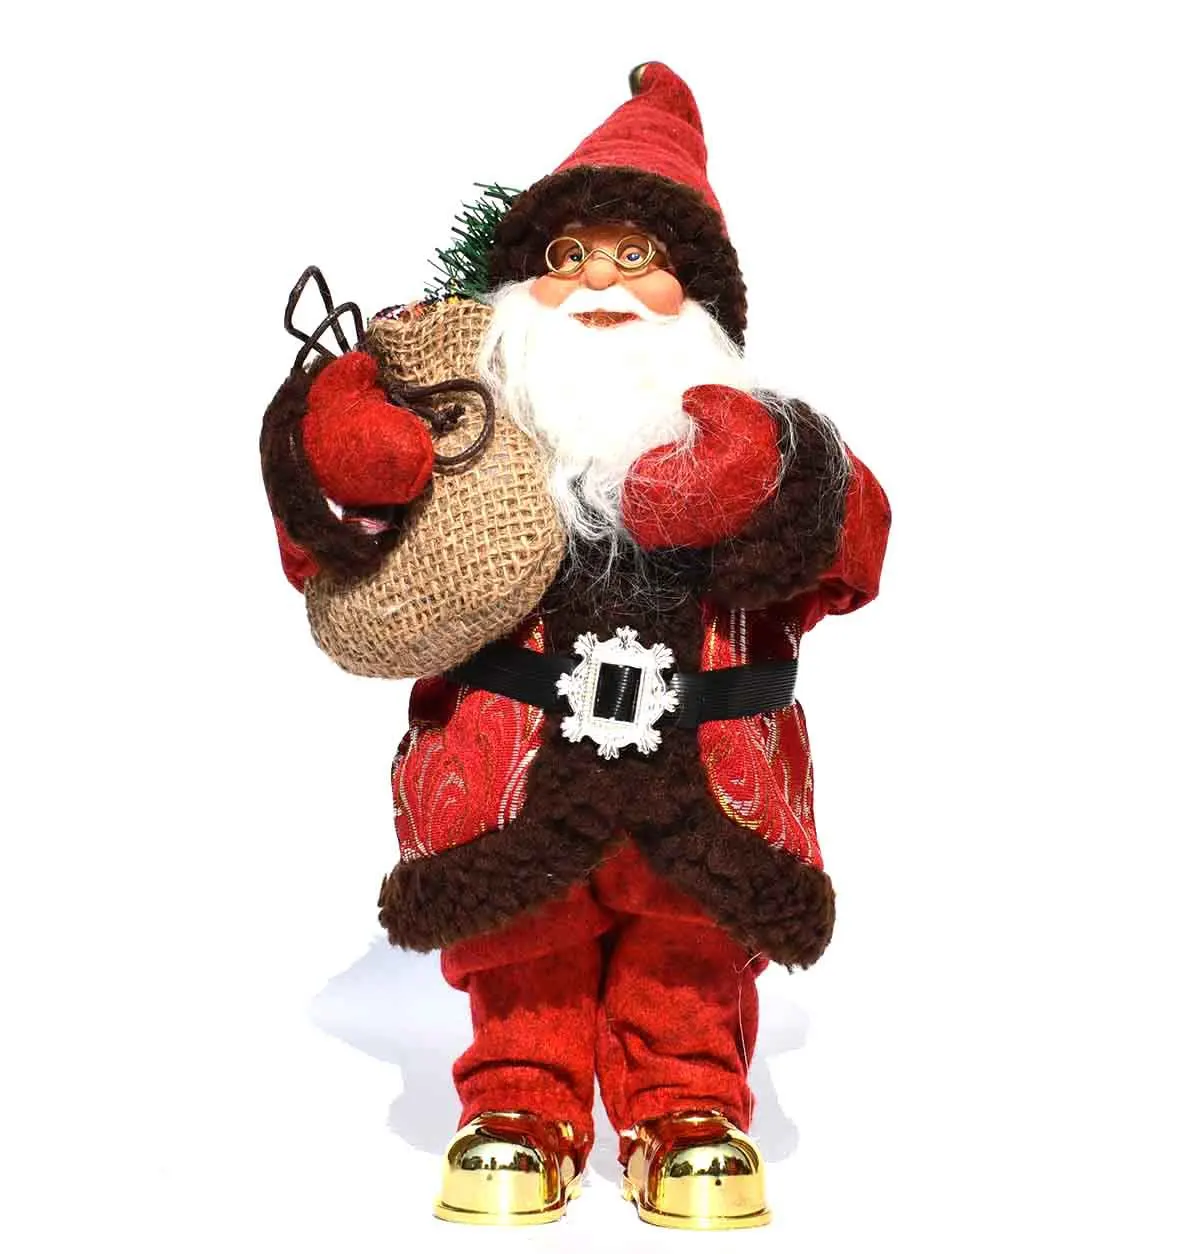 Санта-Клаус Кукла рождественские украшения Милая Рождественская кукла игрушка подарок игрушка рождественские украшения Рождество - Цвет: As shown